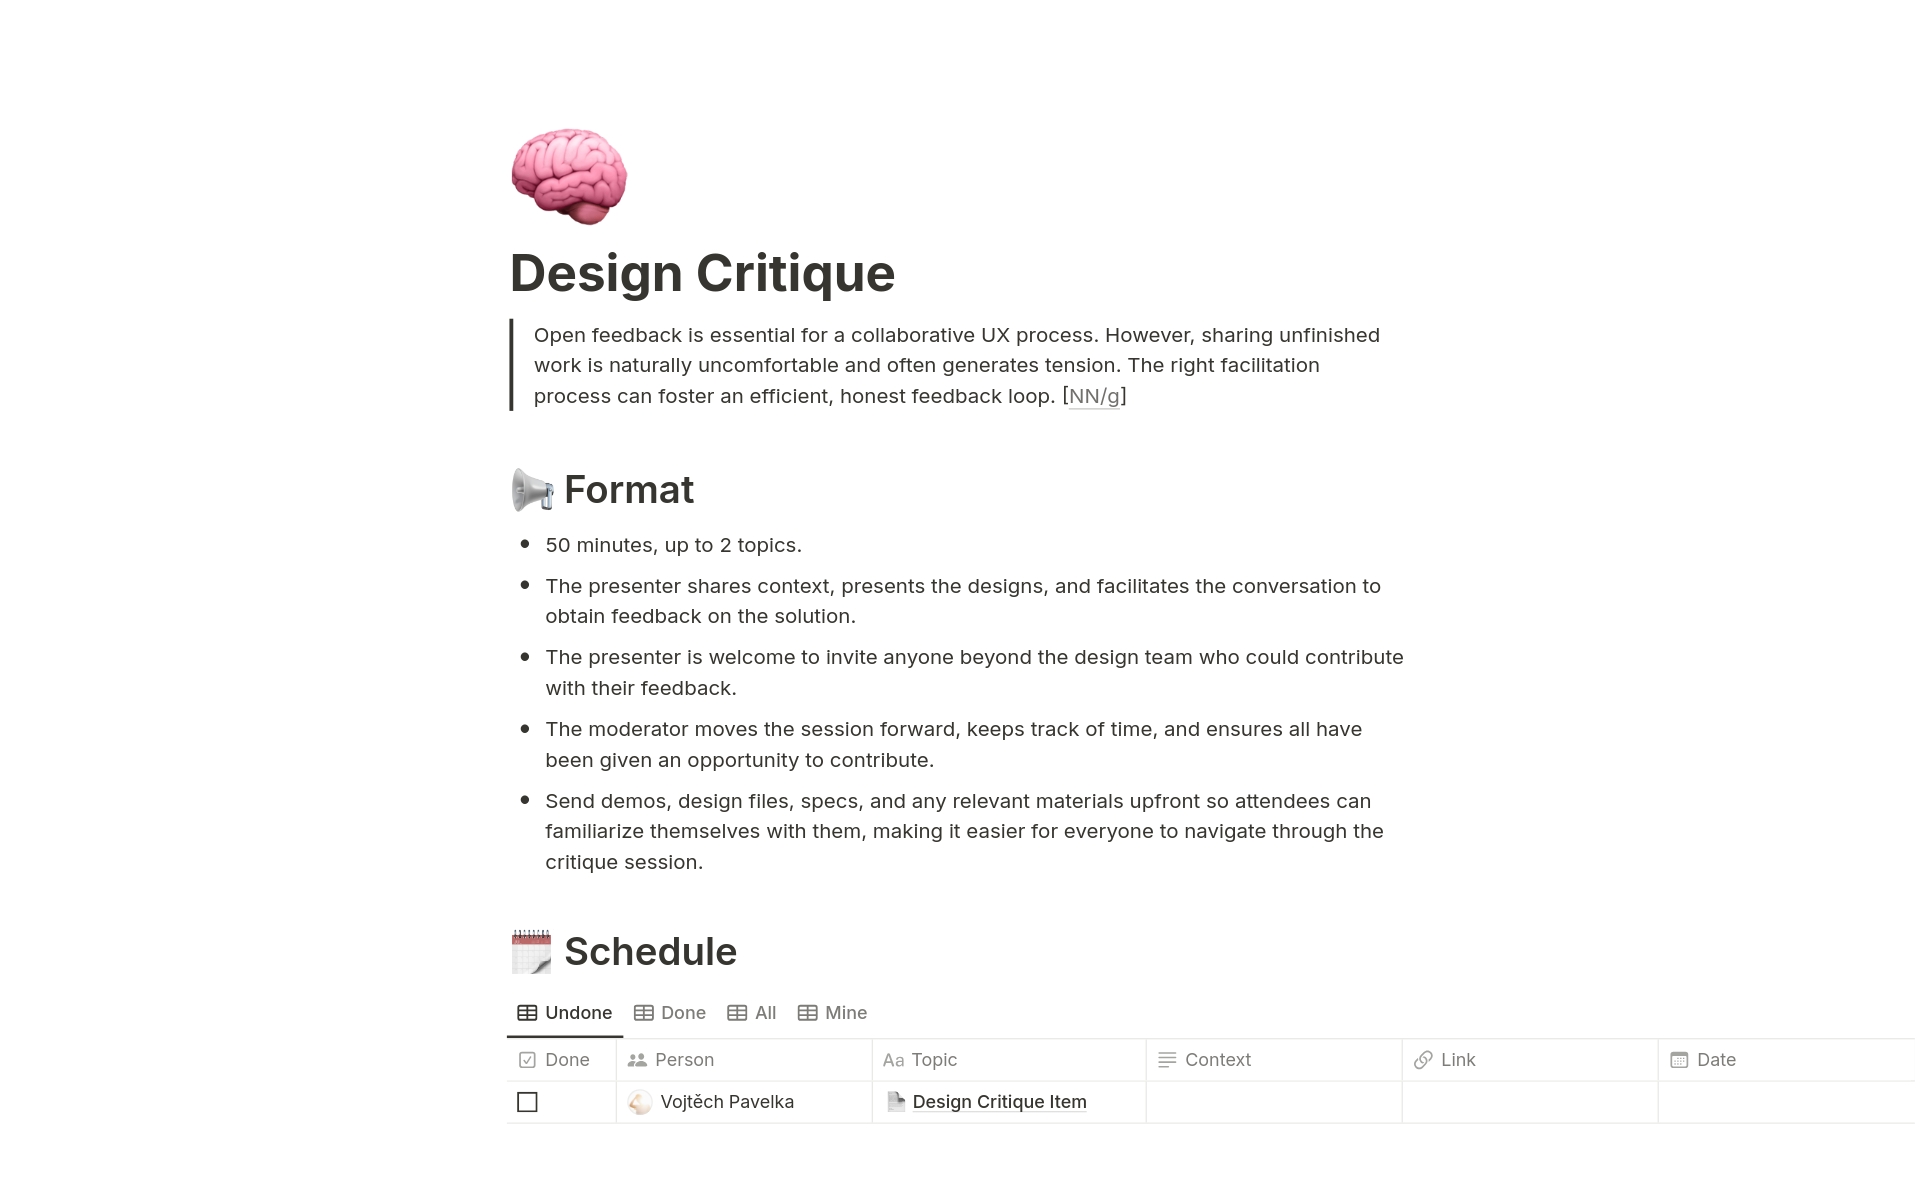 Vista previa de plantilla para Design Critique Library